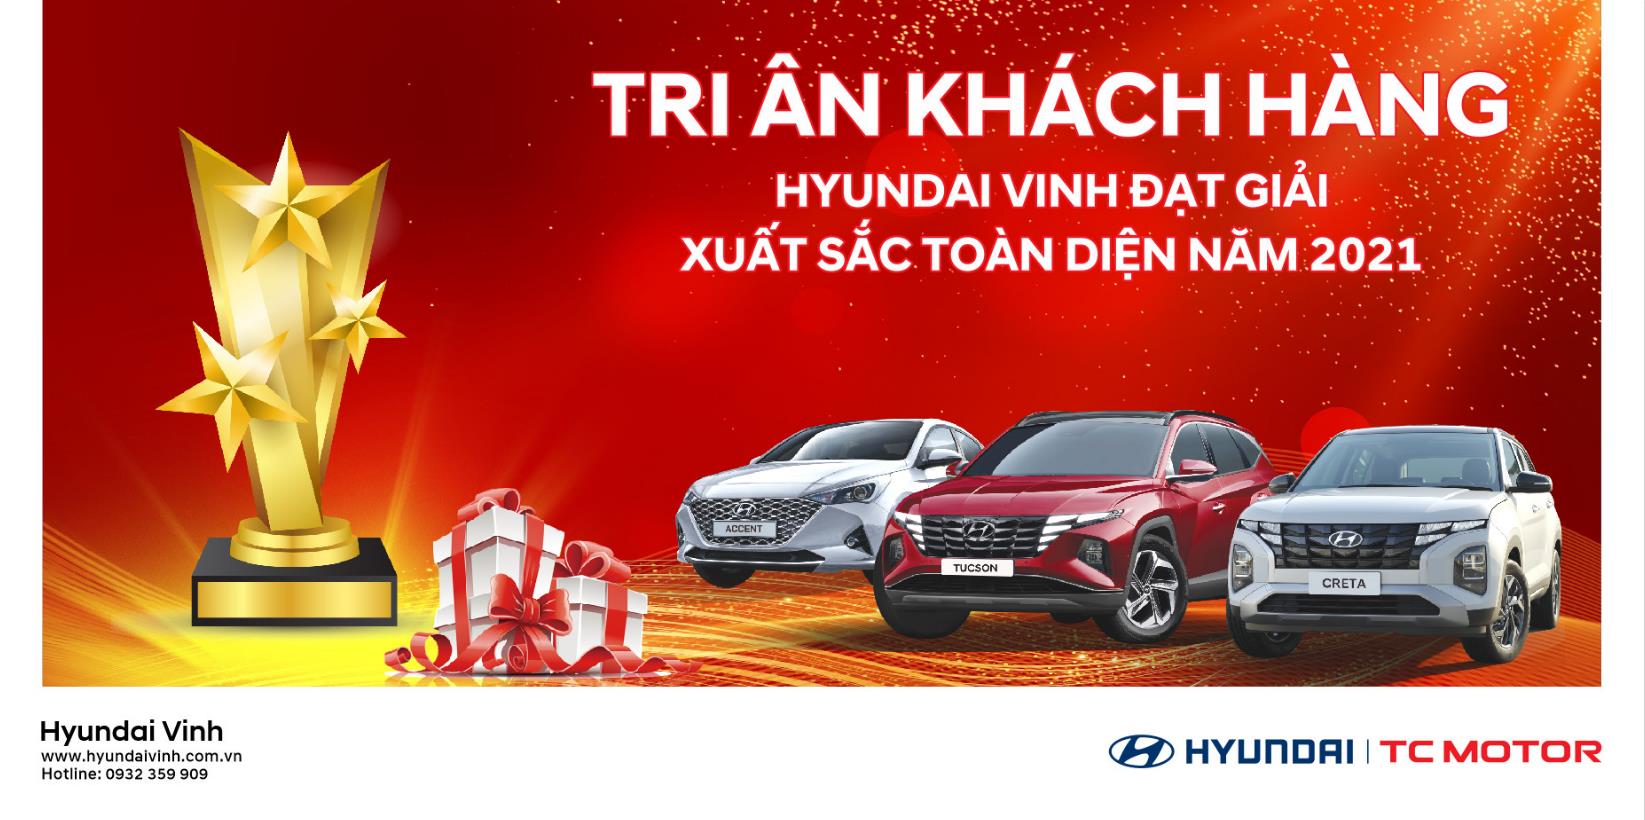 Hyundai Vinh tặng quà tri ân Khách hàng vì đạt giải Xuất Sắc Toàn Diện năm 2021